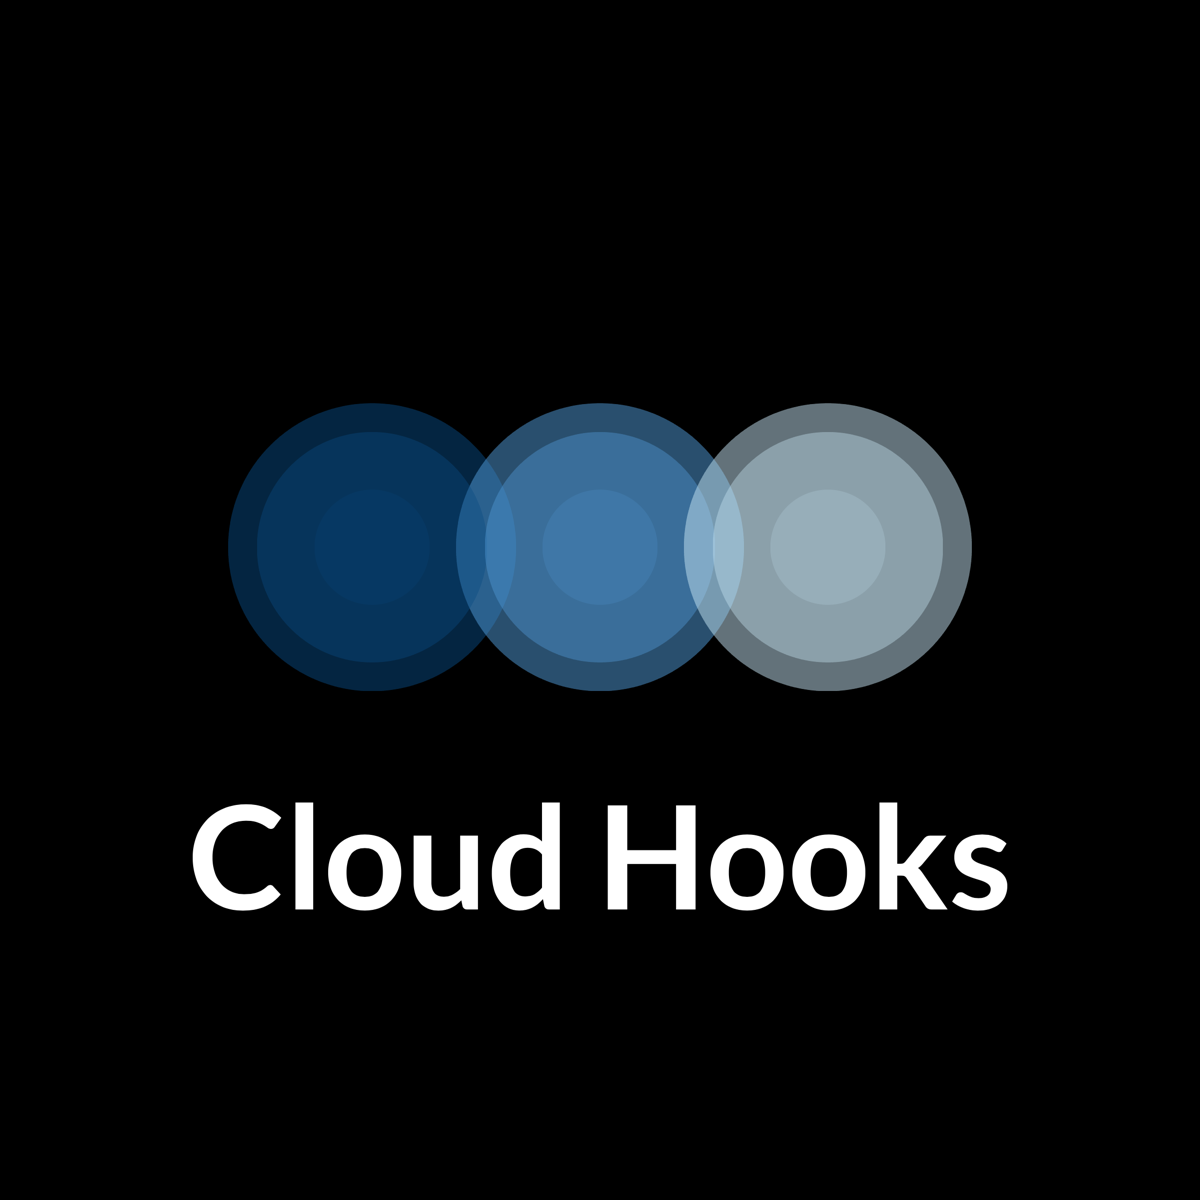 Cloud Hooks